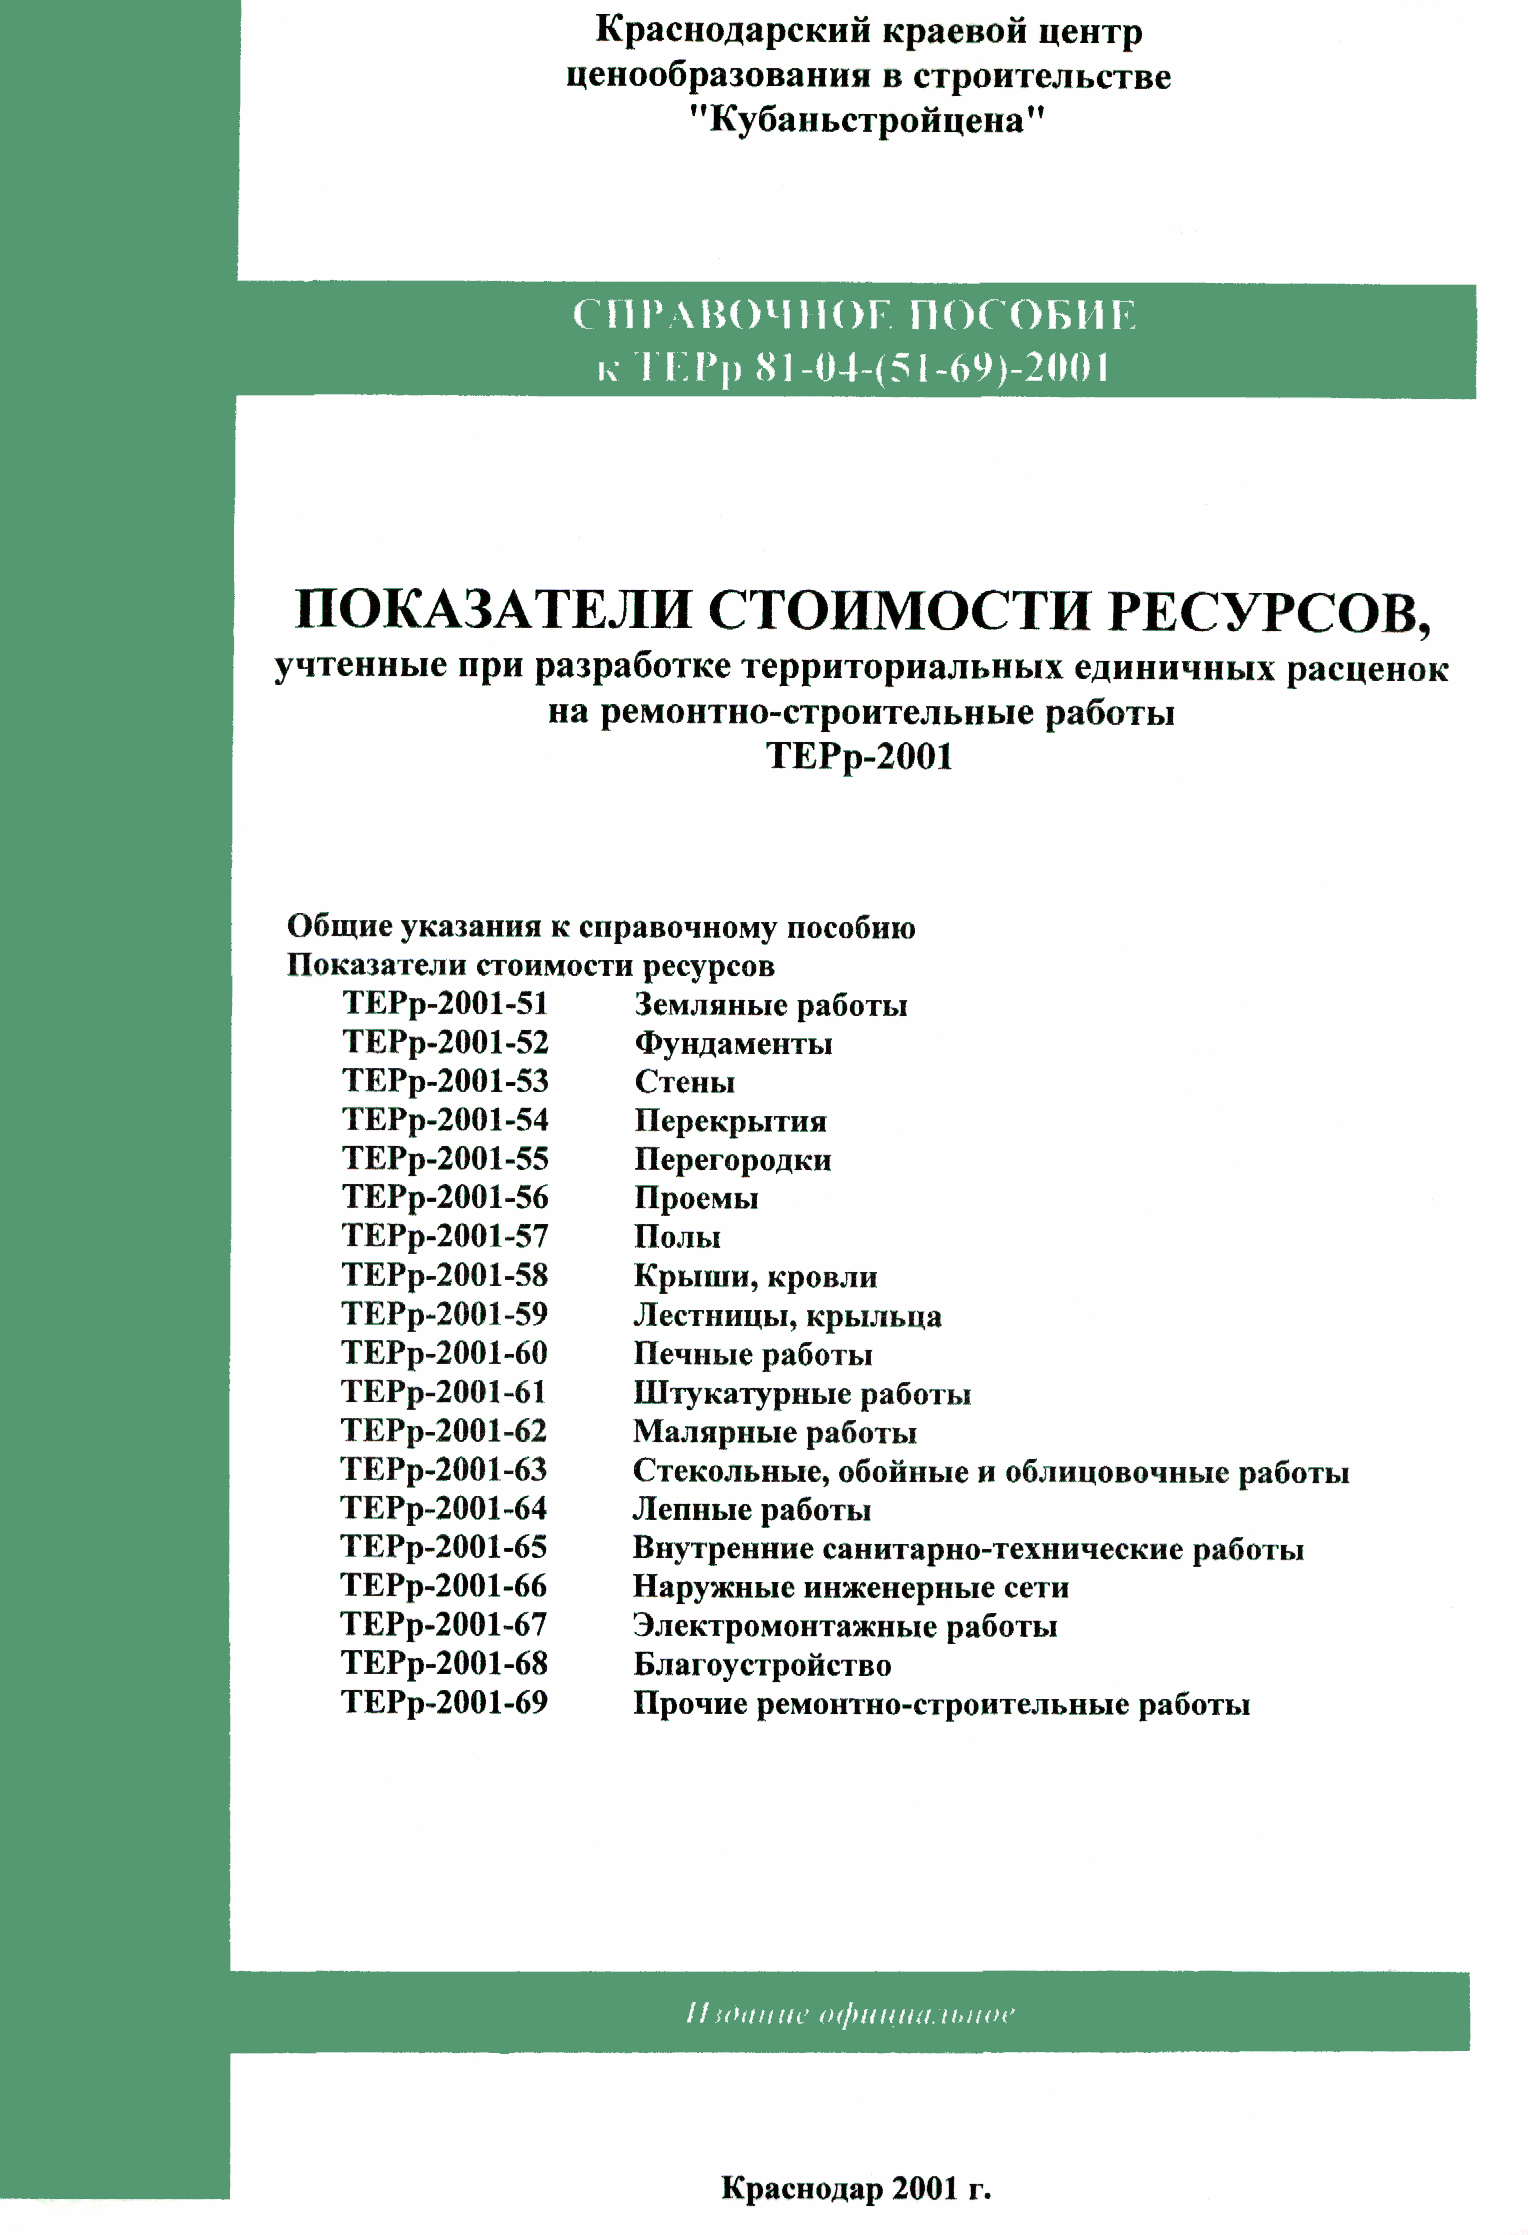 Справочное пособие к ТЕРр 81-04-68-2001